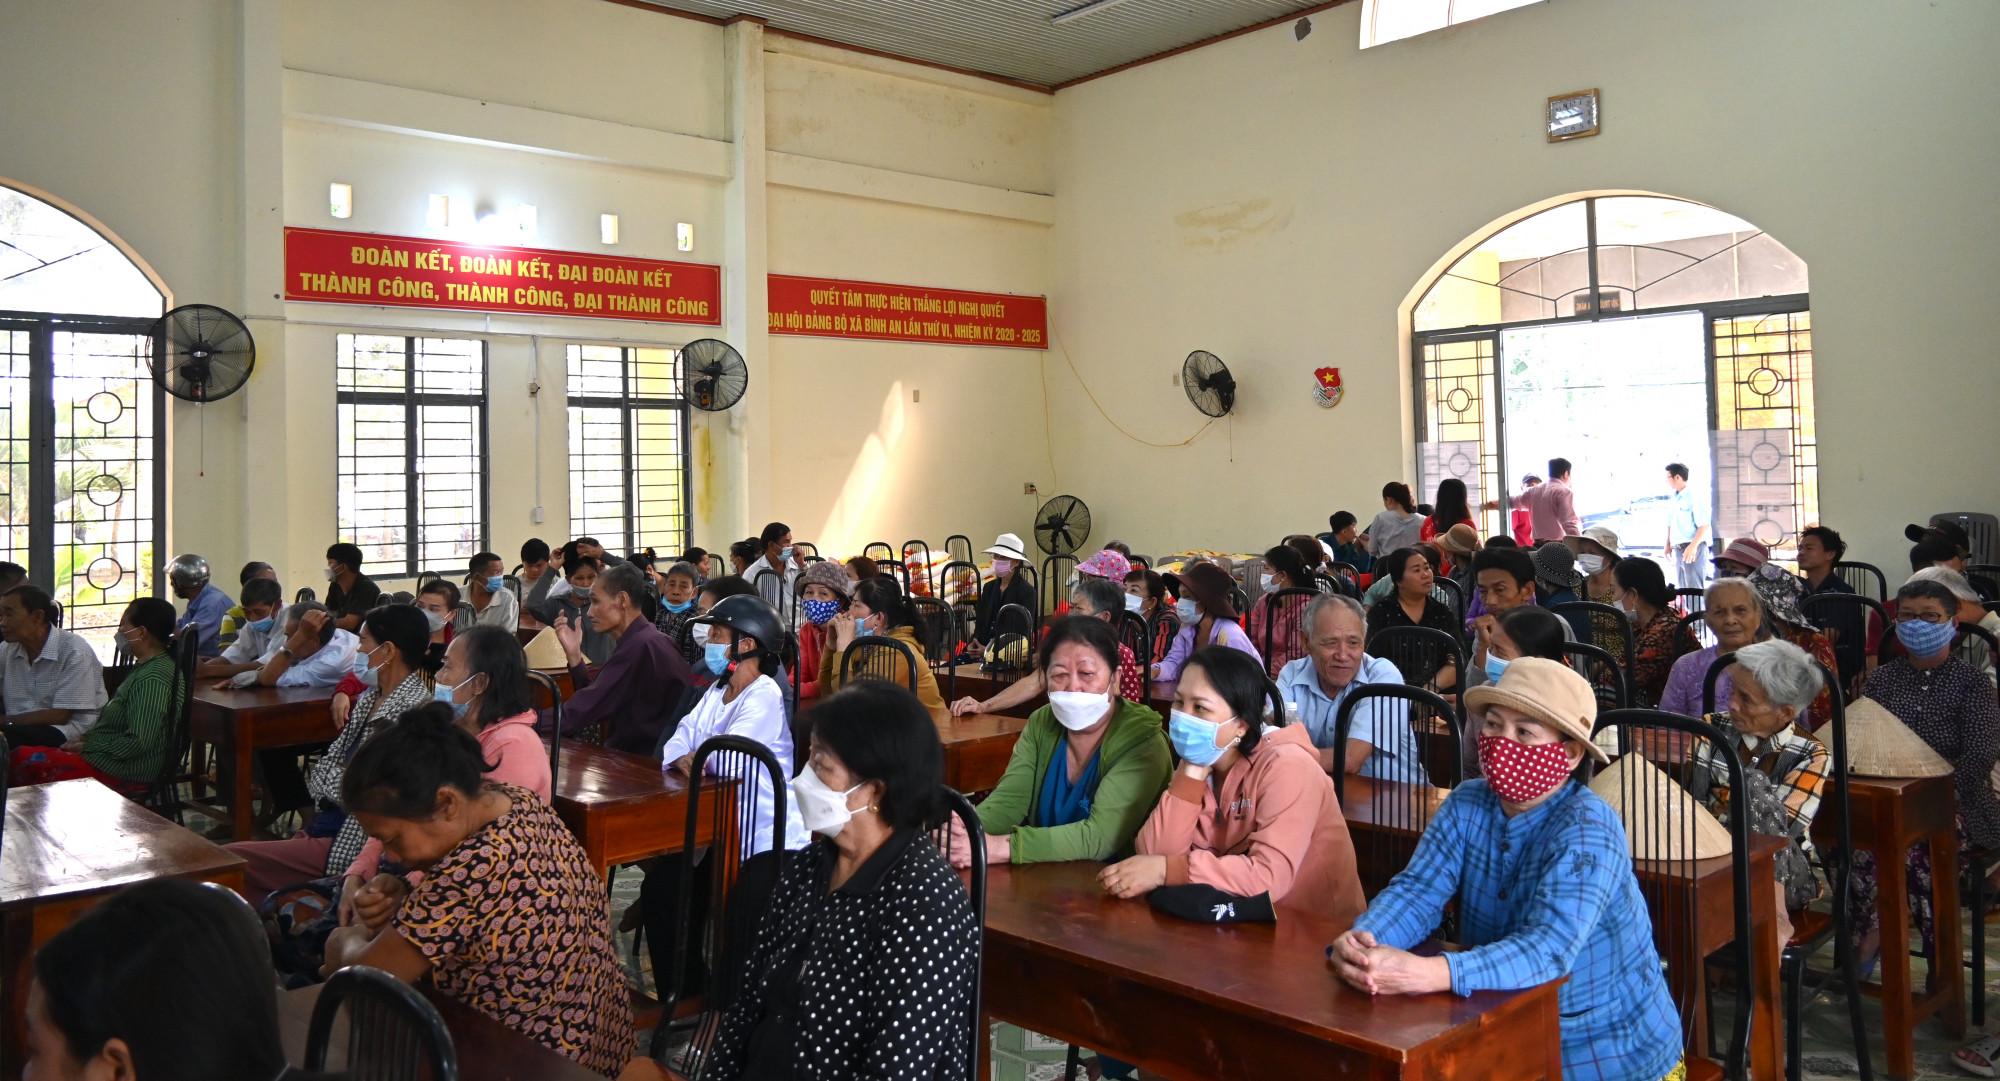 Đông đảo người dân xã Bình An (tỉnh Đồng Nai) đã có mặt từ sớm để tham dự sự kiện - Ảnh: Vedan Việt Nam